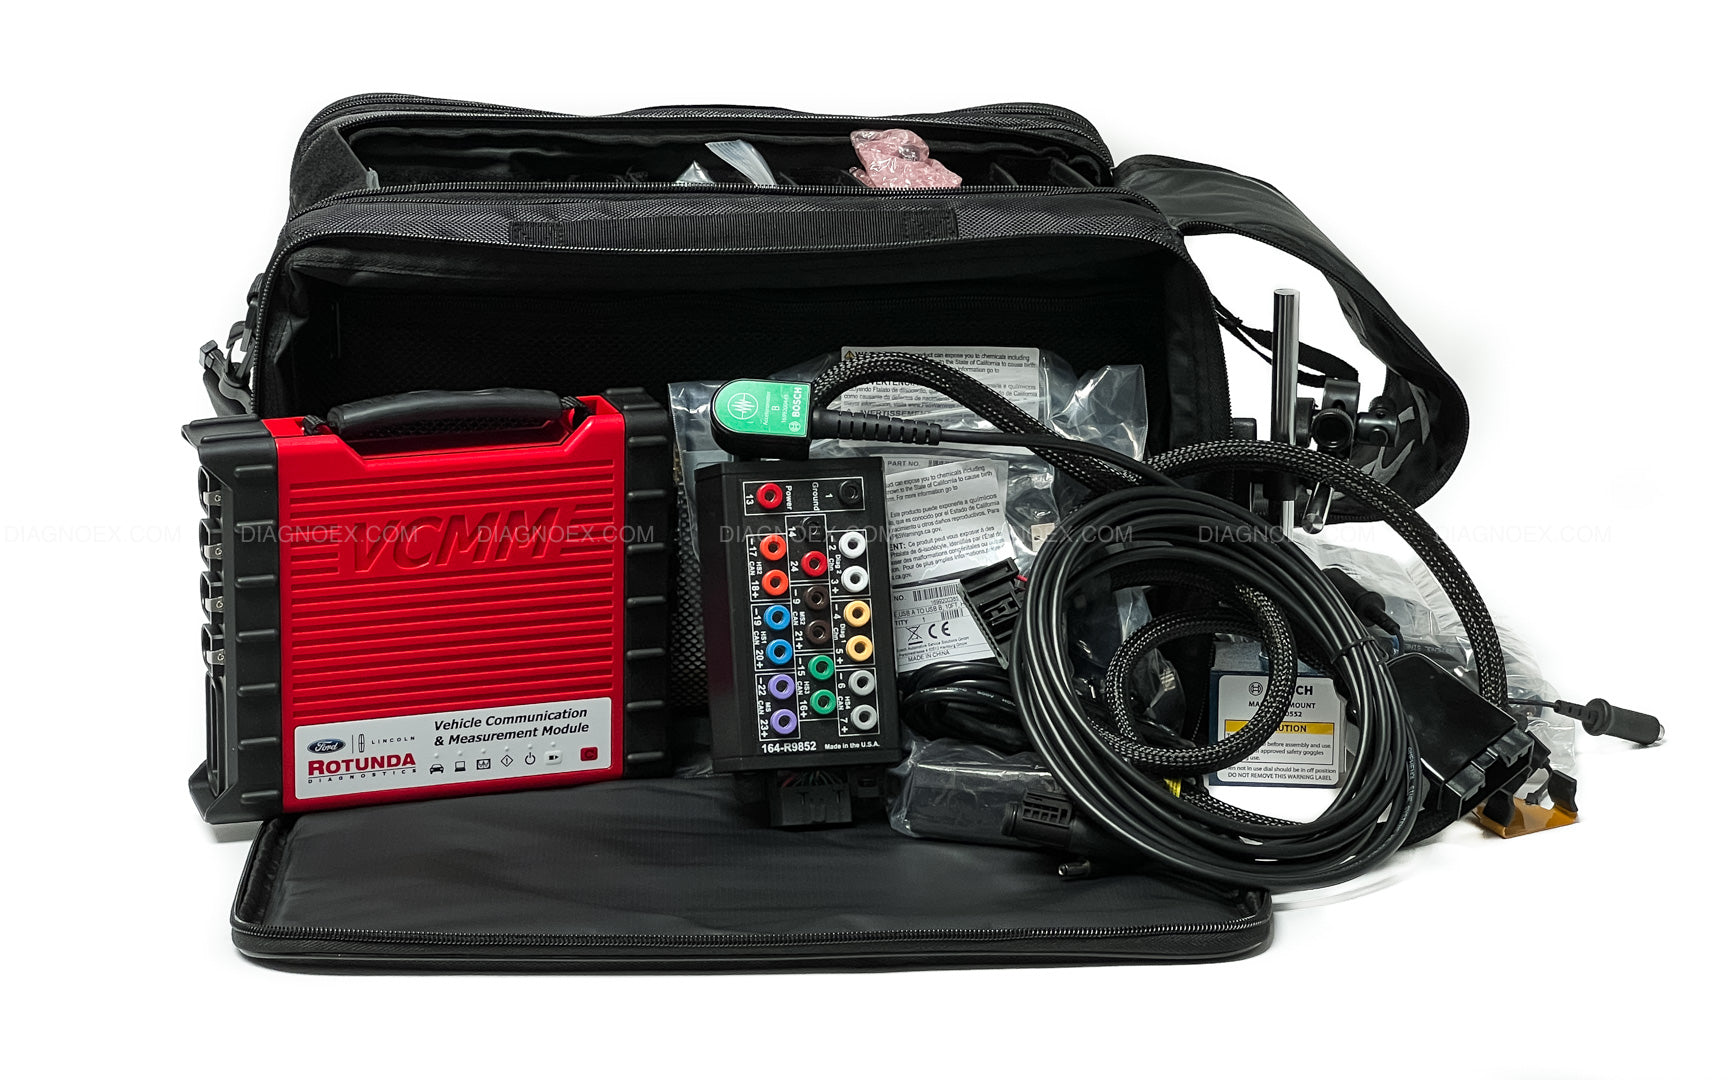 Ford VCMM Advanced Kit 164-R9823 with Gateway Module Breakout Box